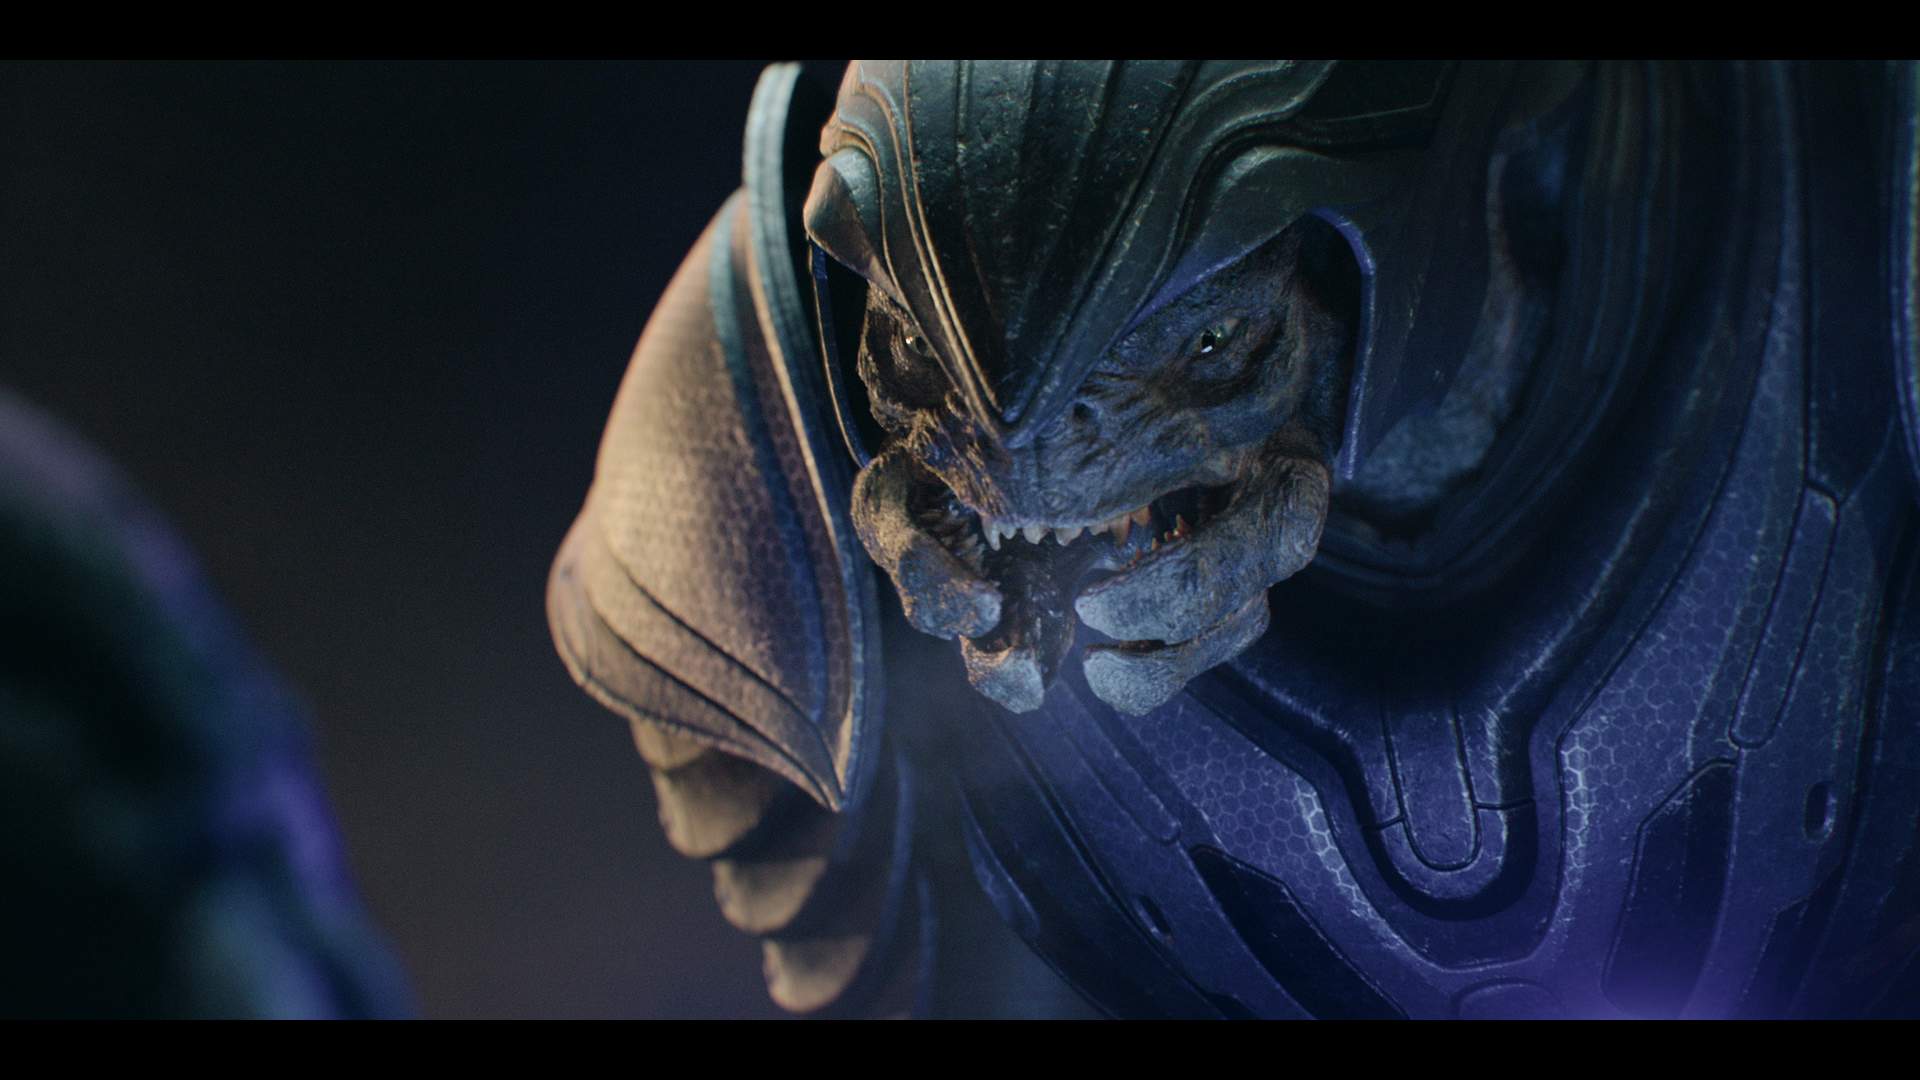 Halo: criador do jogo critica série live-action do Paramount+;